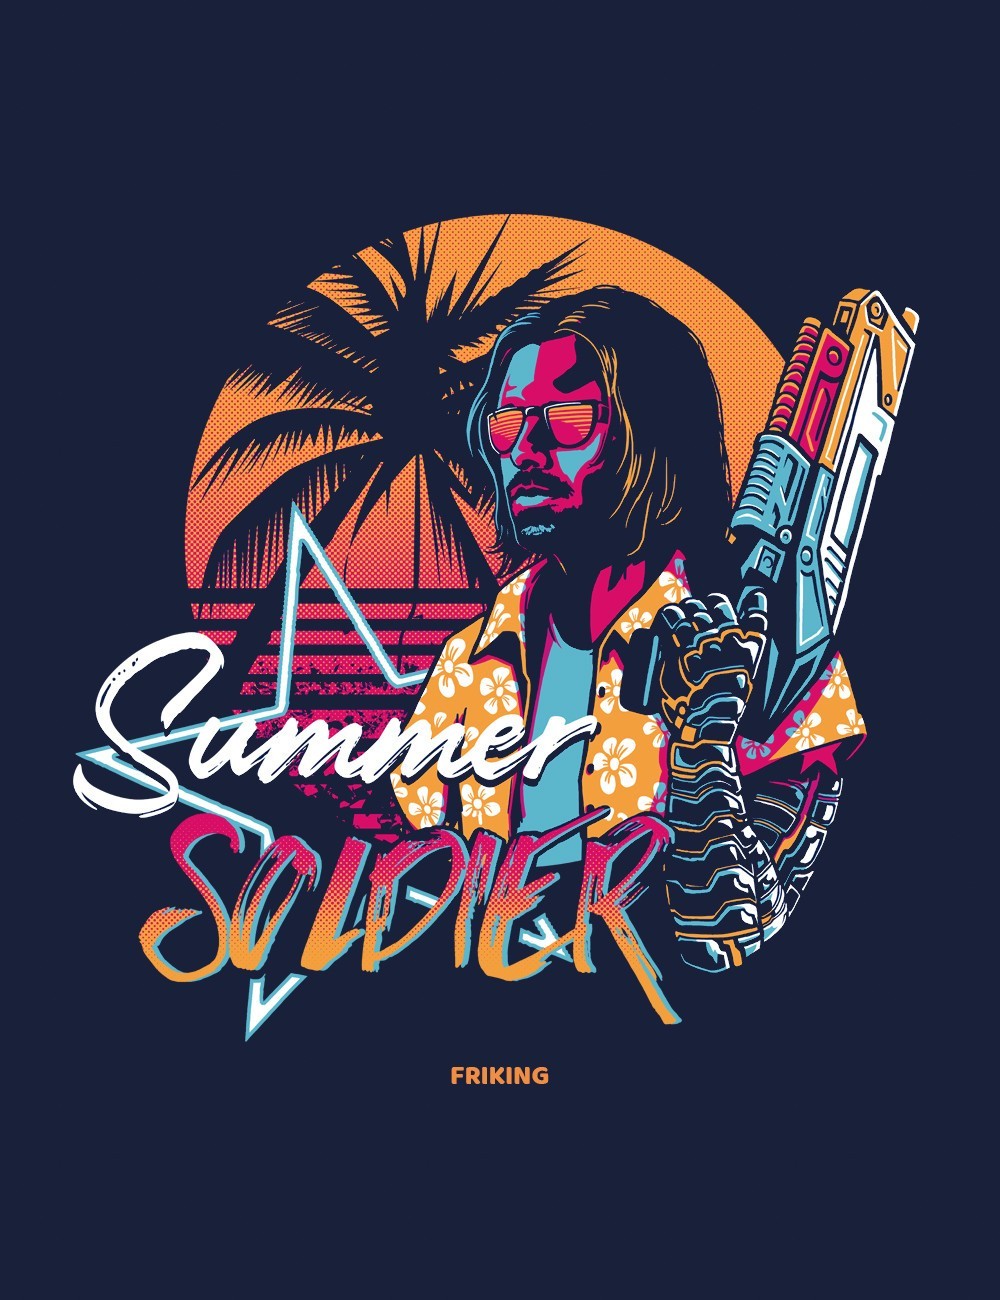  Summer Soldier 